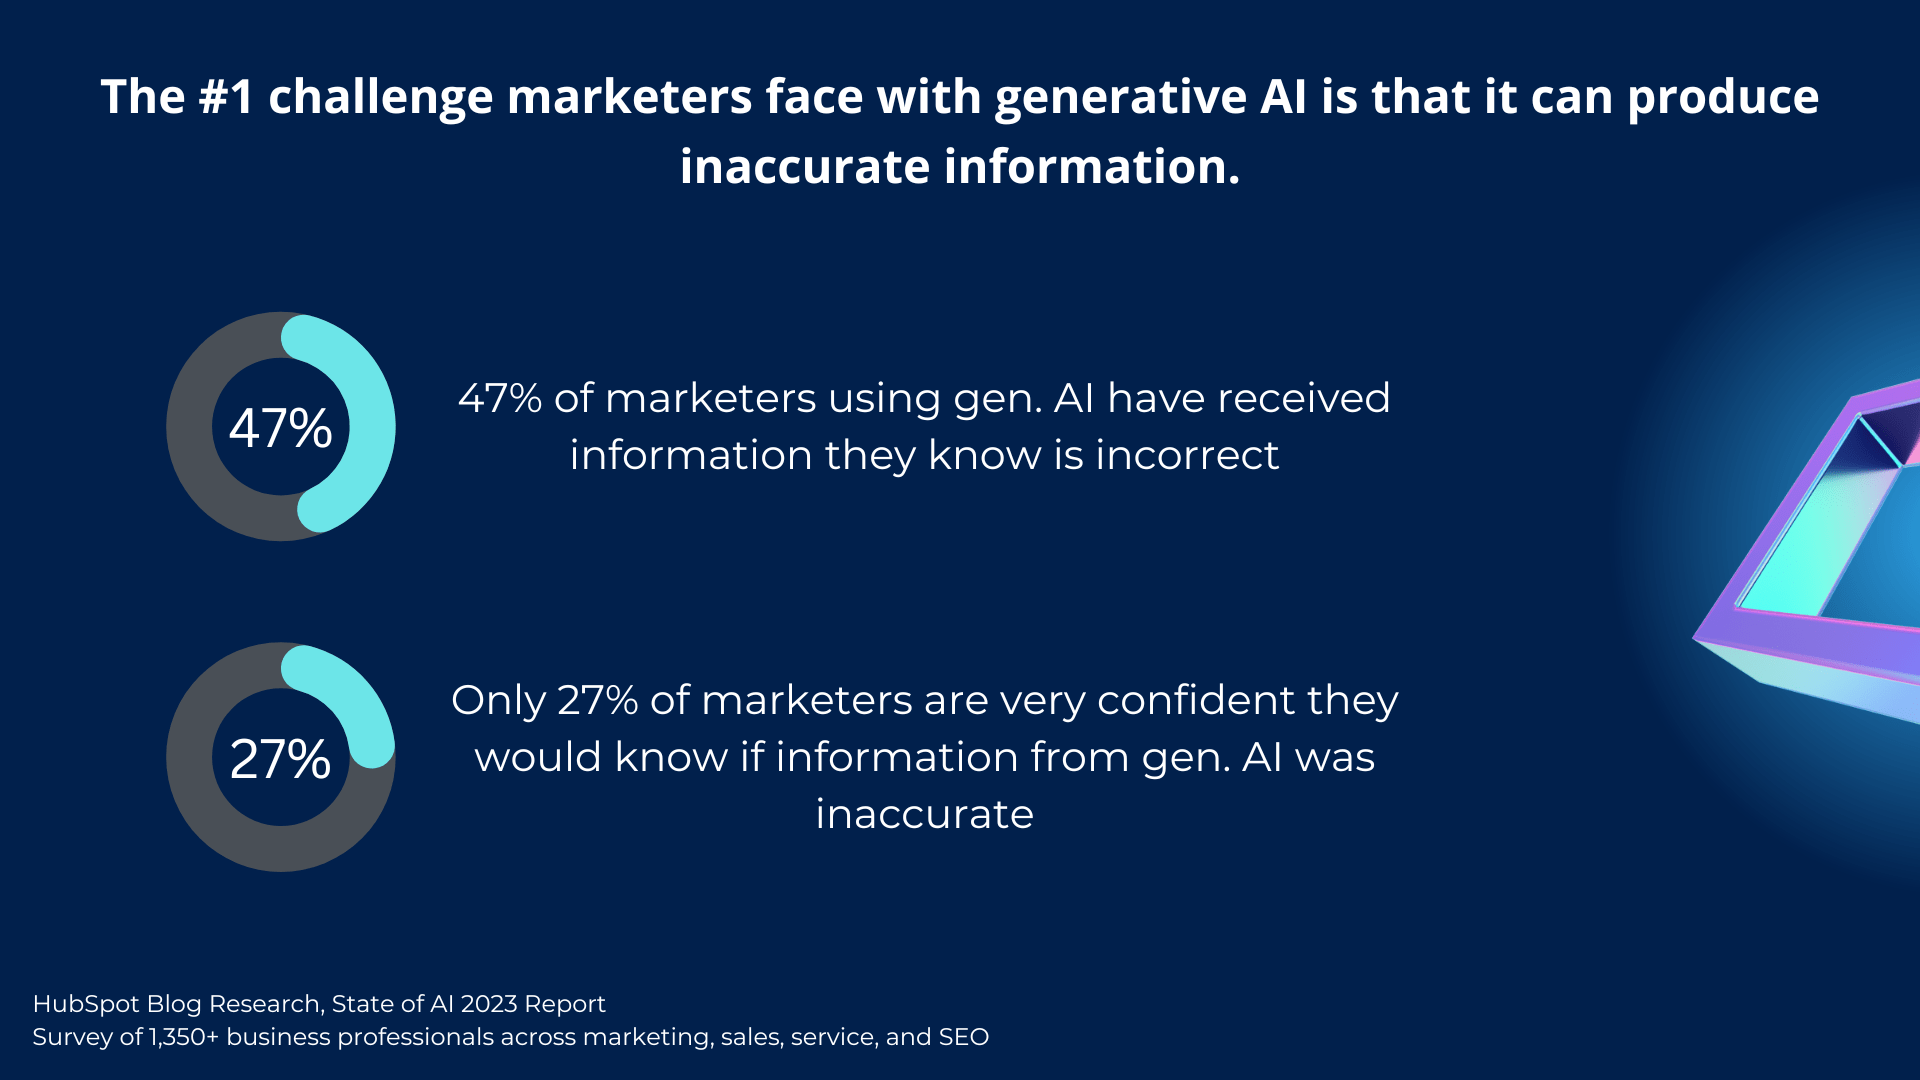 Desafíos a los que se enfrentan los especialistas en marketing con la IA generativa